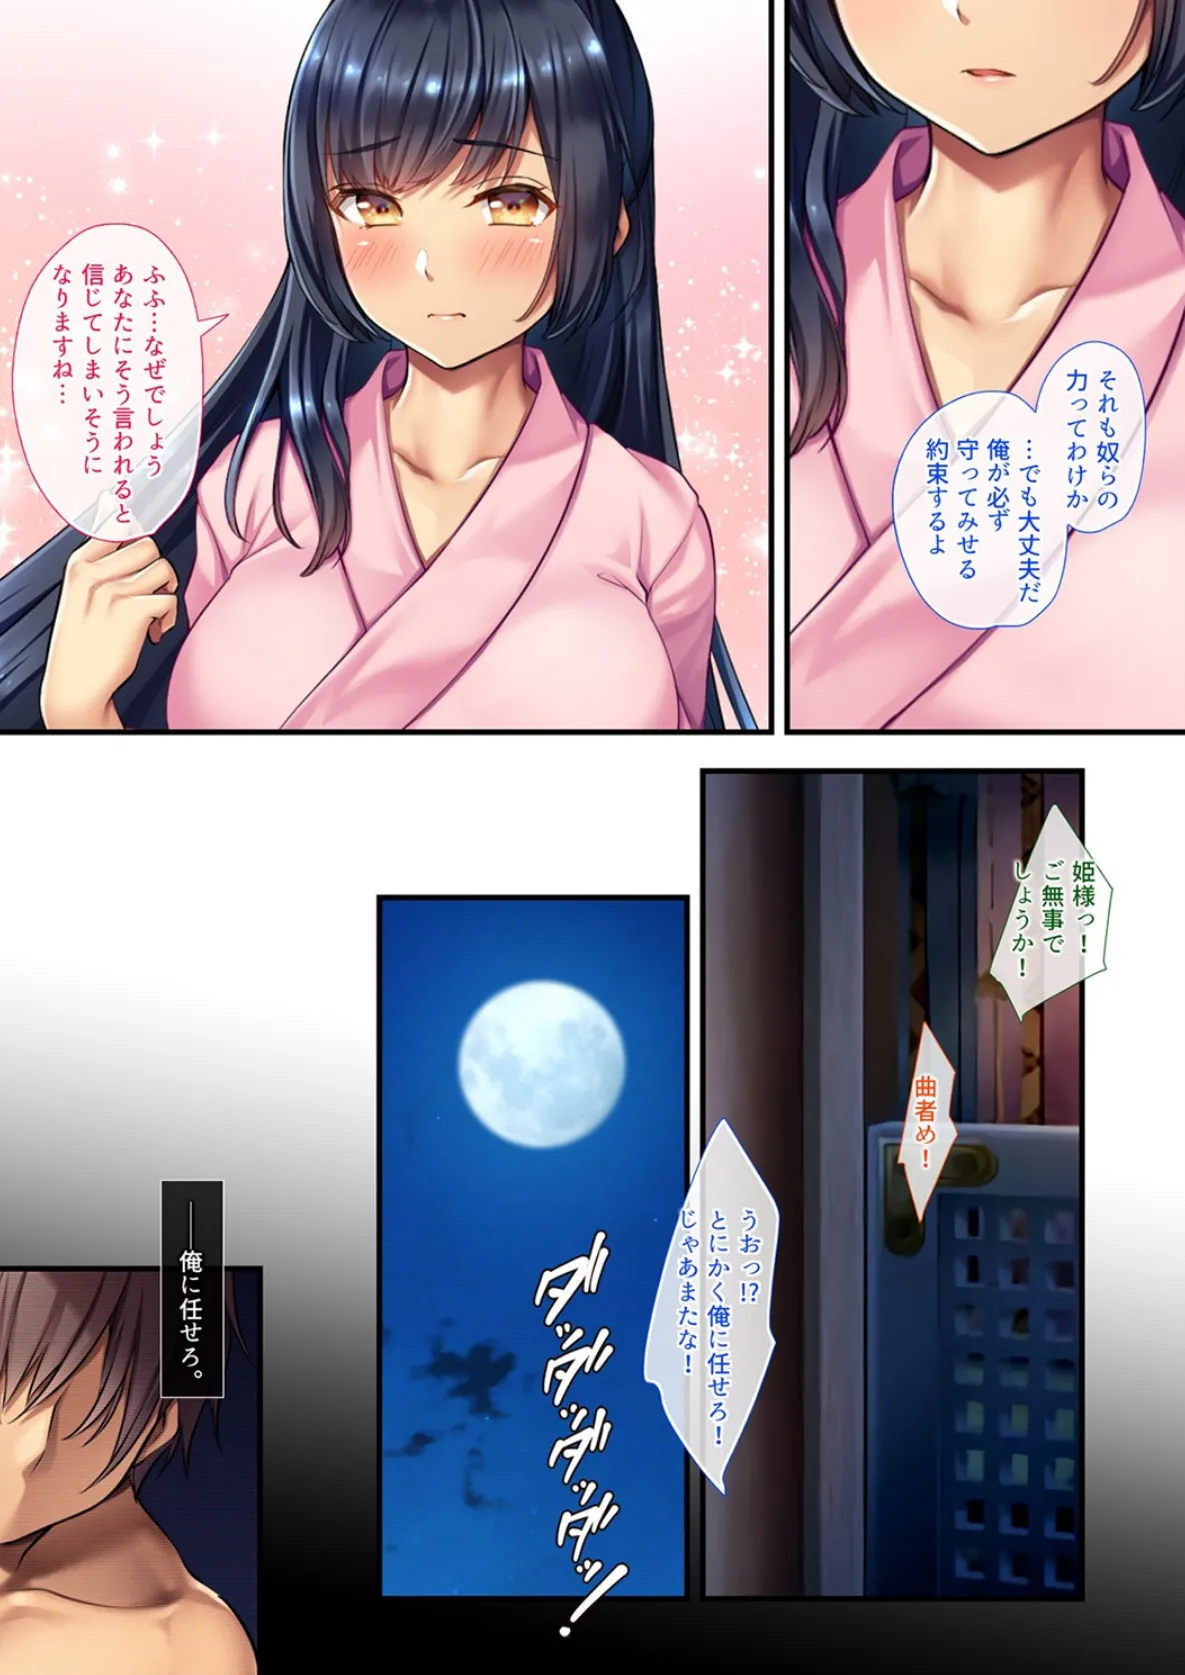 淫らな日本昔話-竹より太い絶倫なアレにハマって月に帰らなくなったかぐや姫- 5 5ページ